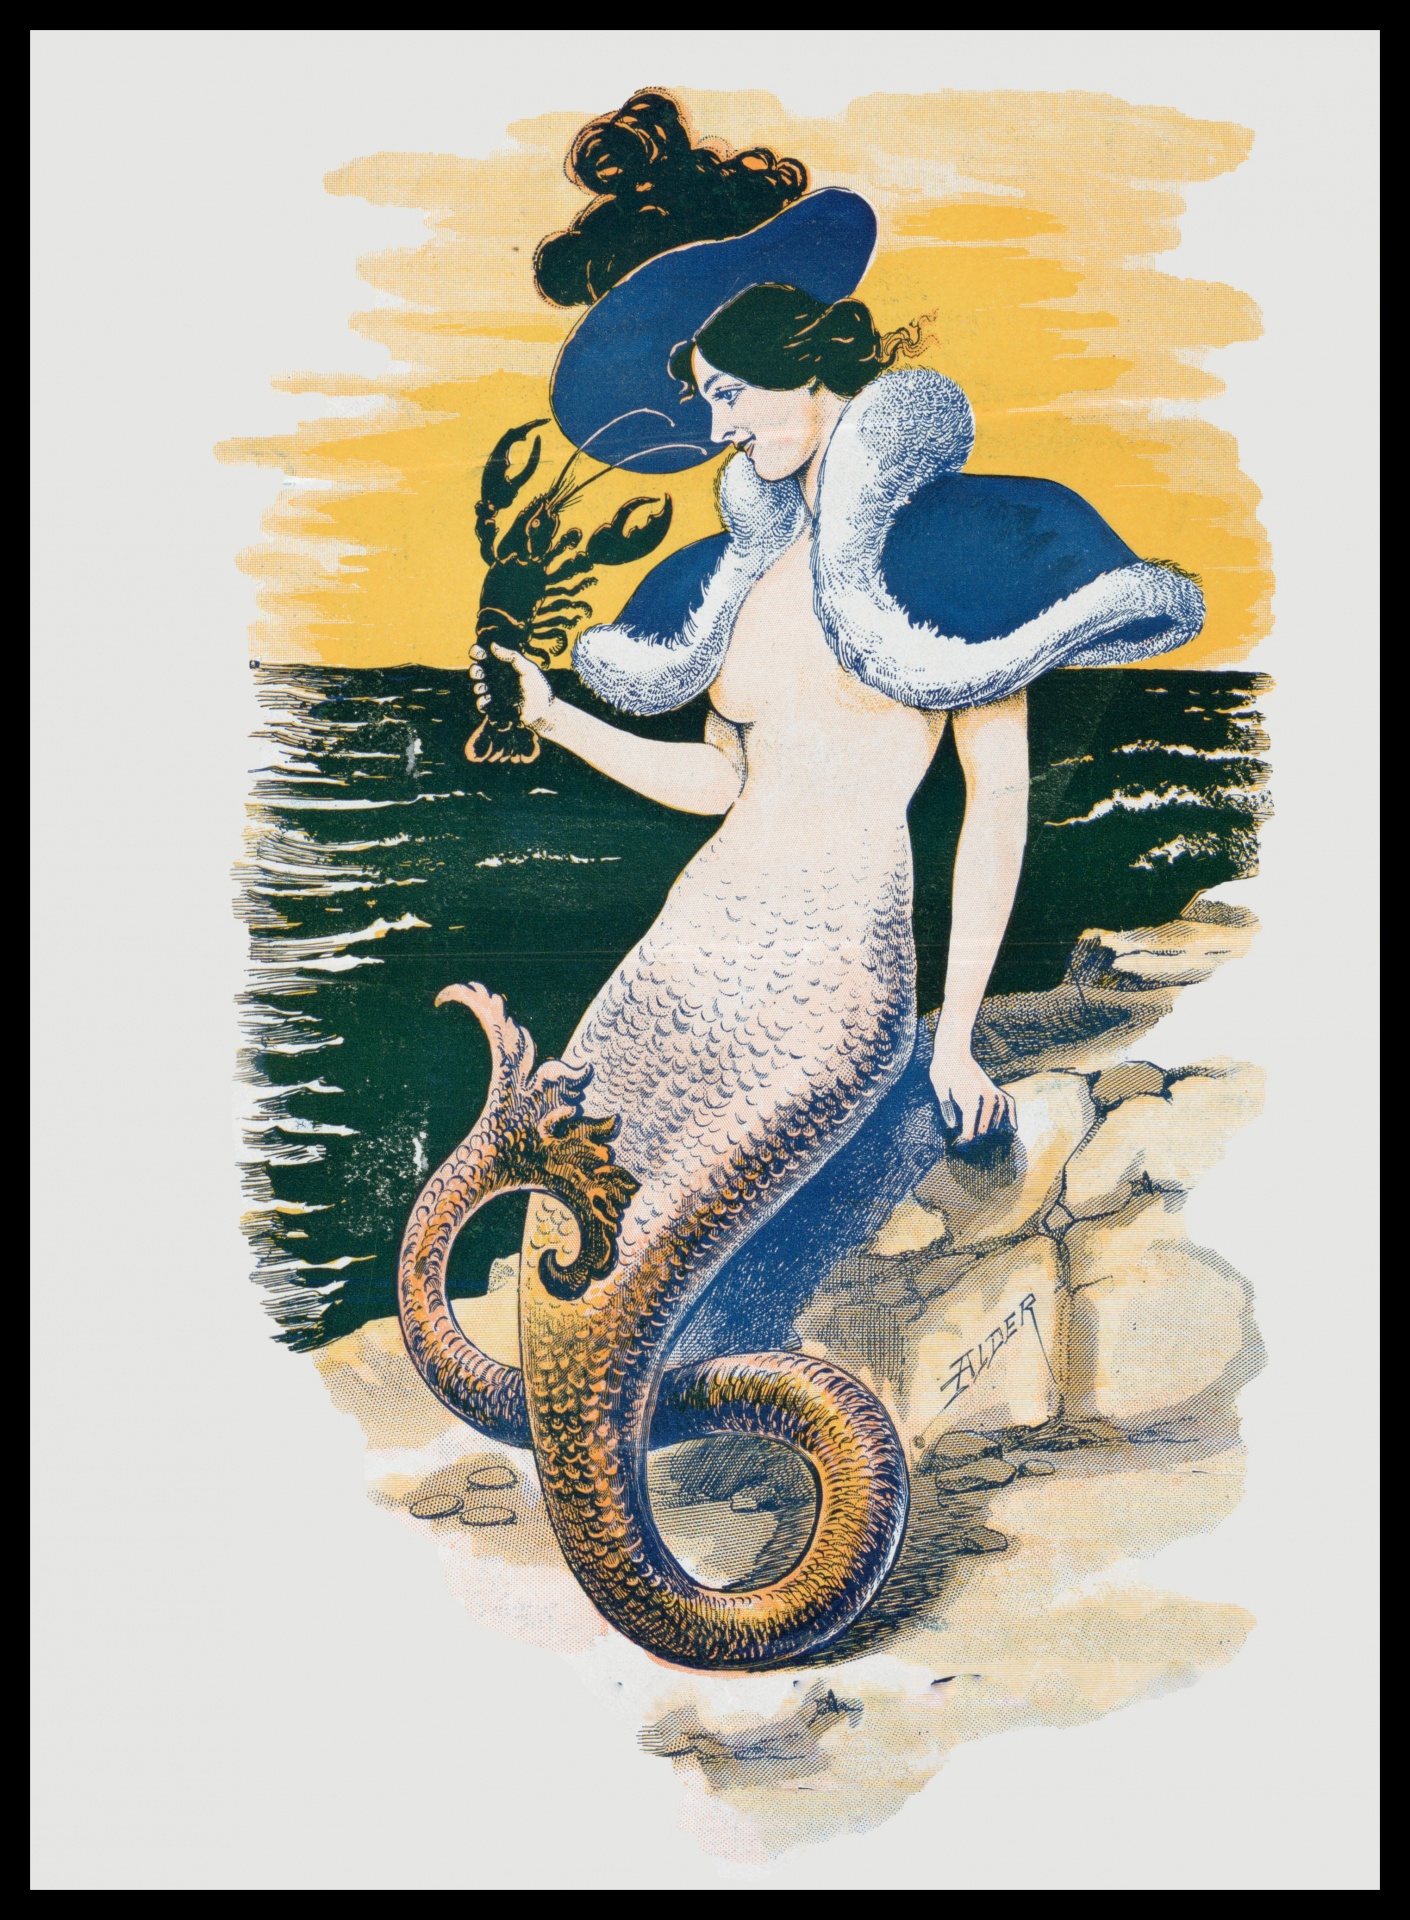 Vintage Mermaid Illustrations